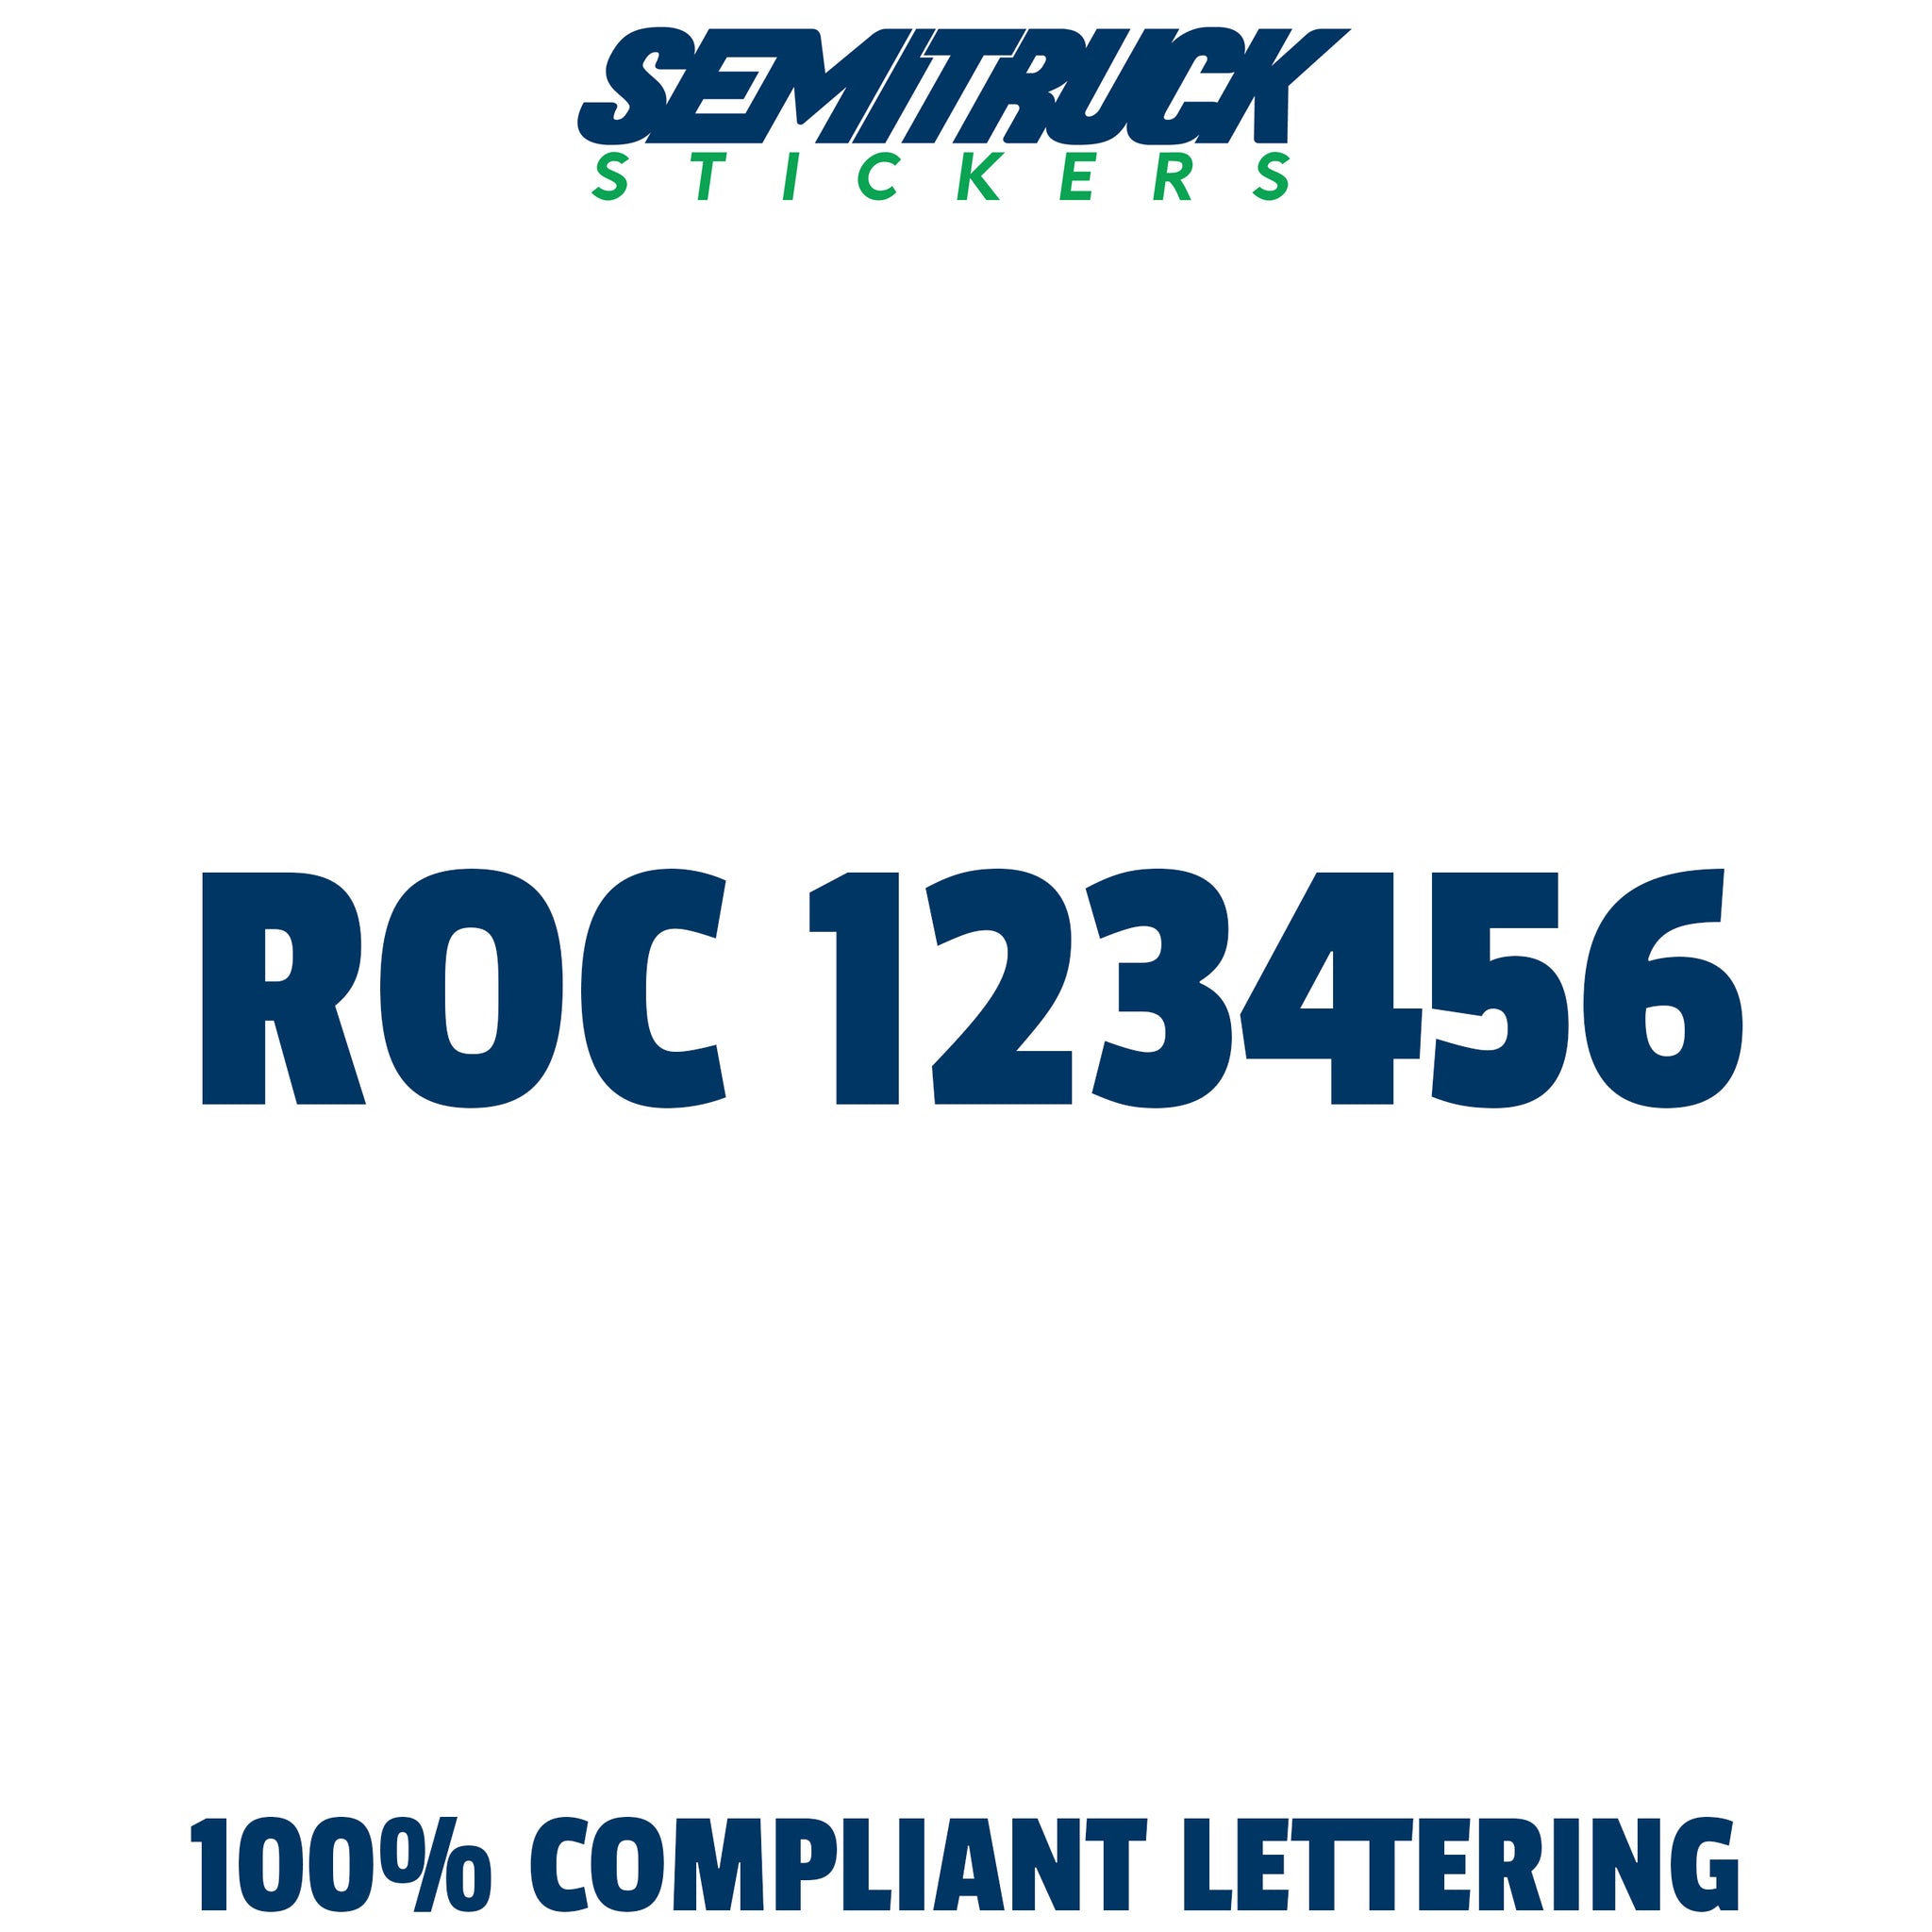 ROC number sticker